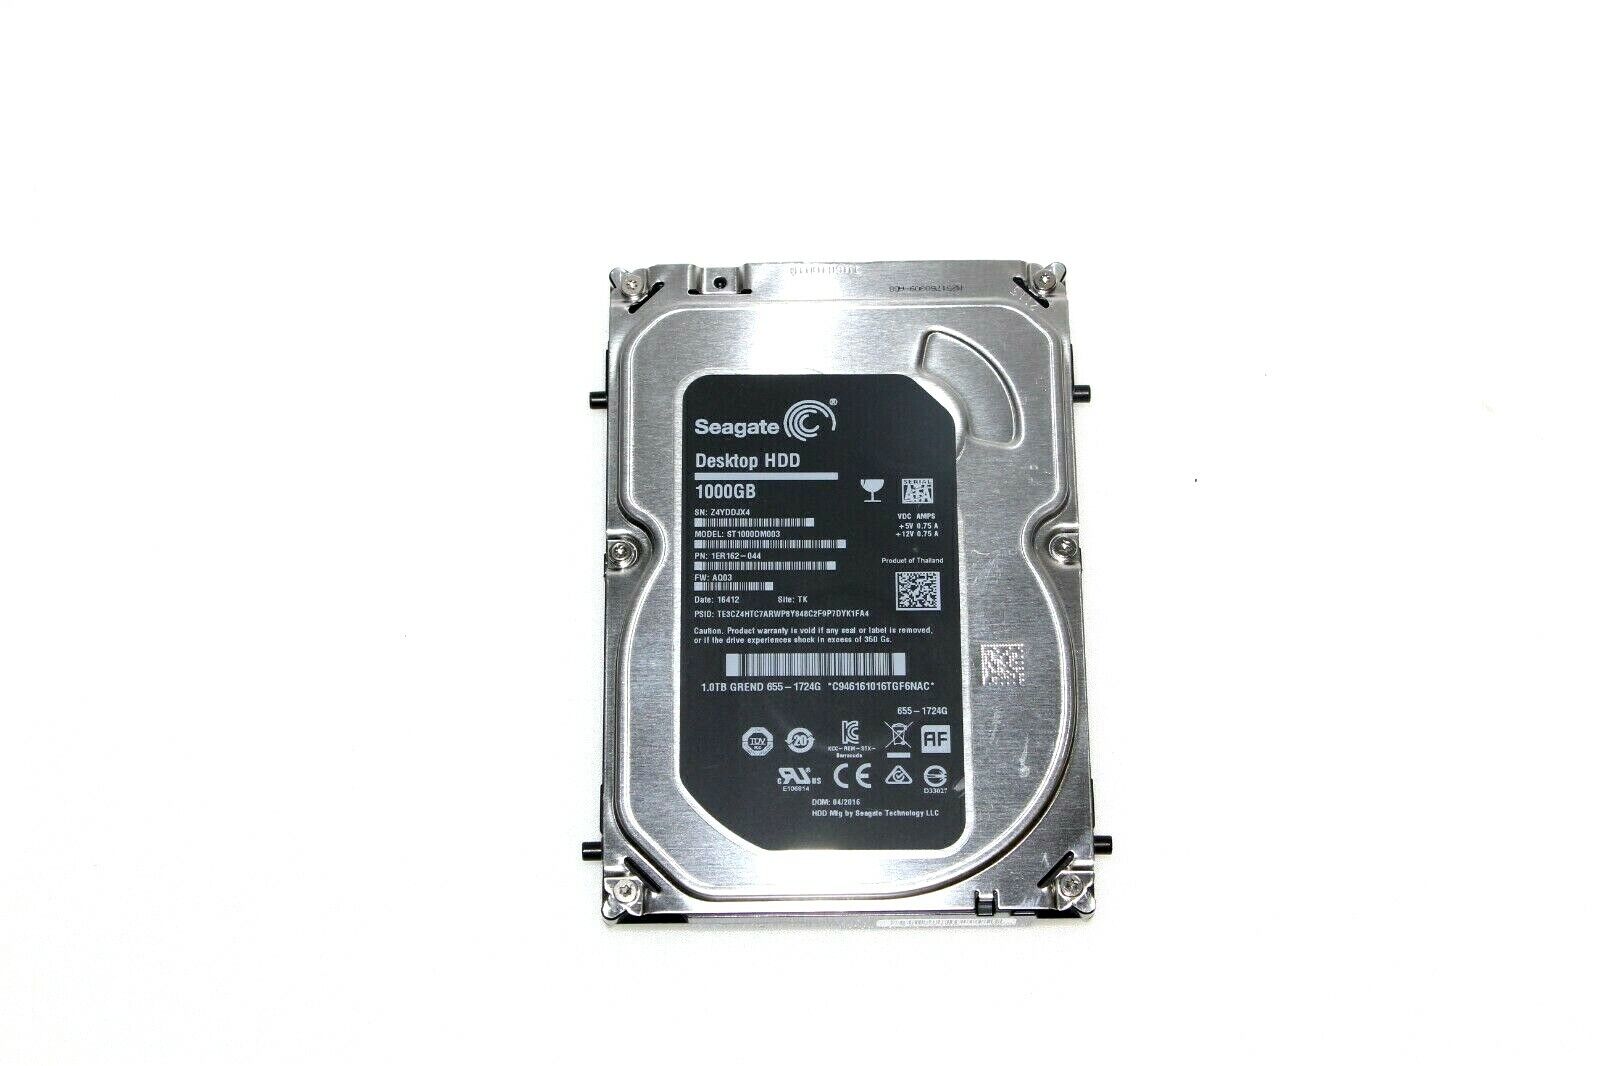 Seagate 1000GB/1TB 3.5" SATA 3 Desktop Hard Disk Drive HDD ST1000DM003